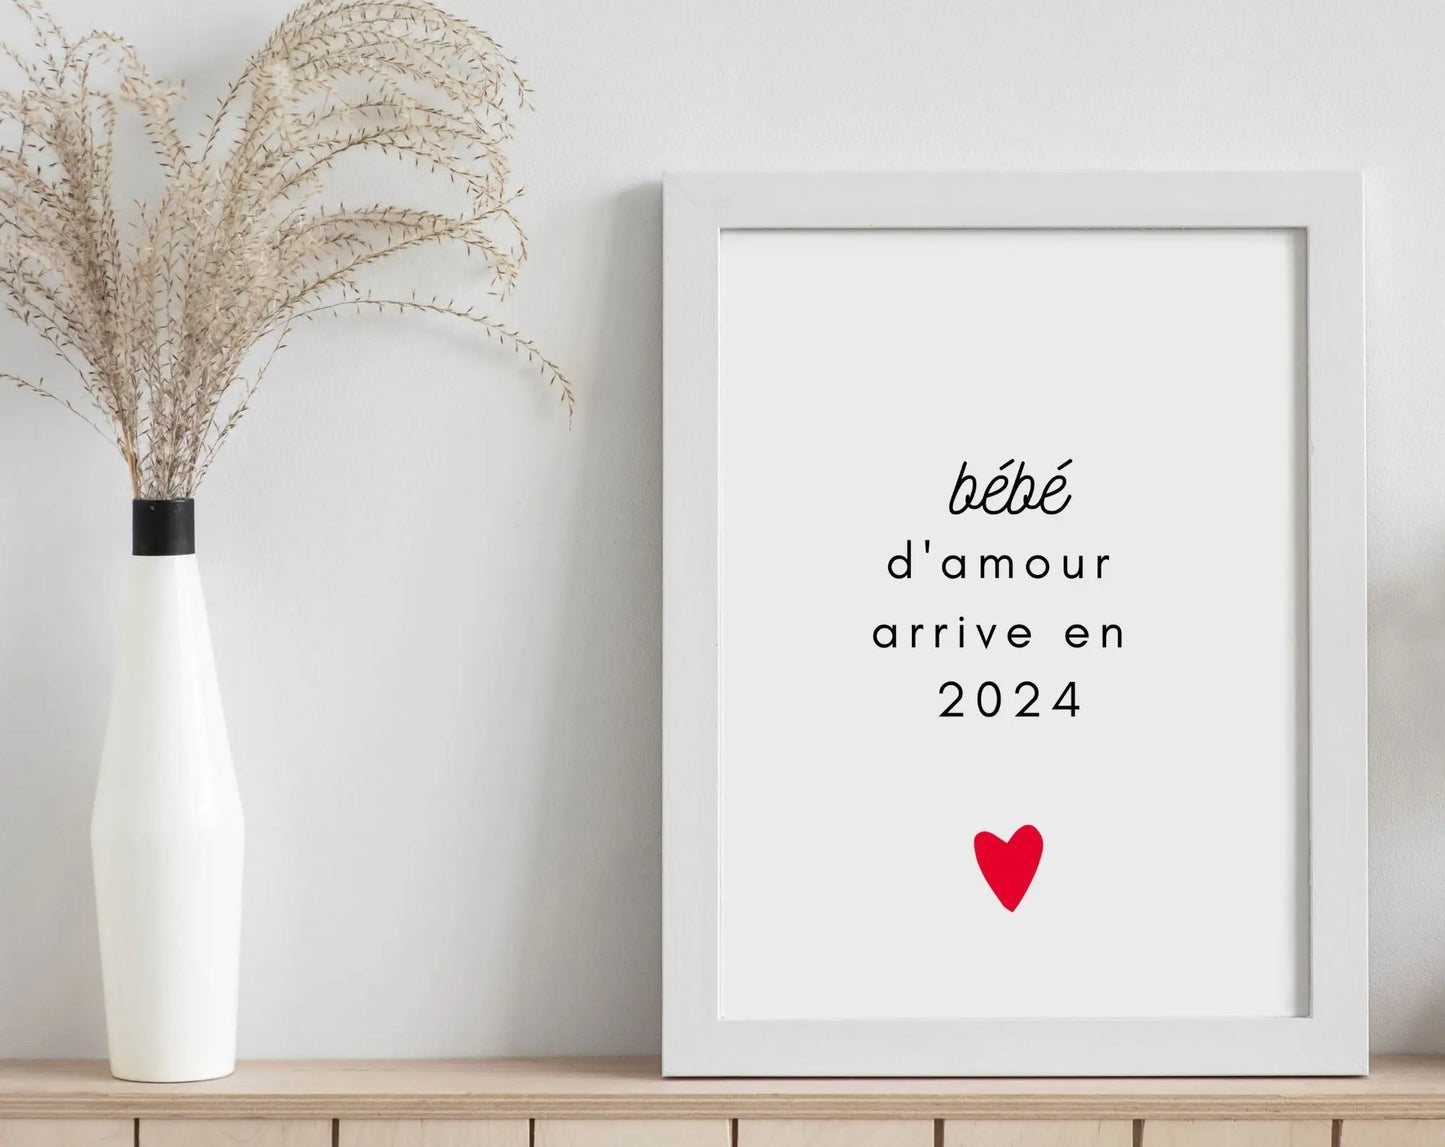 Bébé d'amour arrive en 2024 - Annonce grossesse originale FLTMfrance